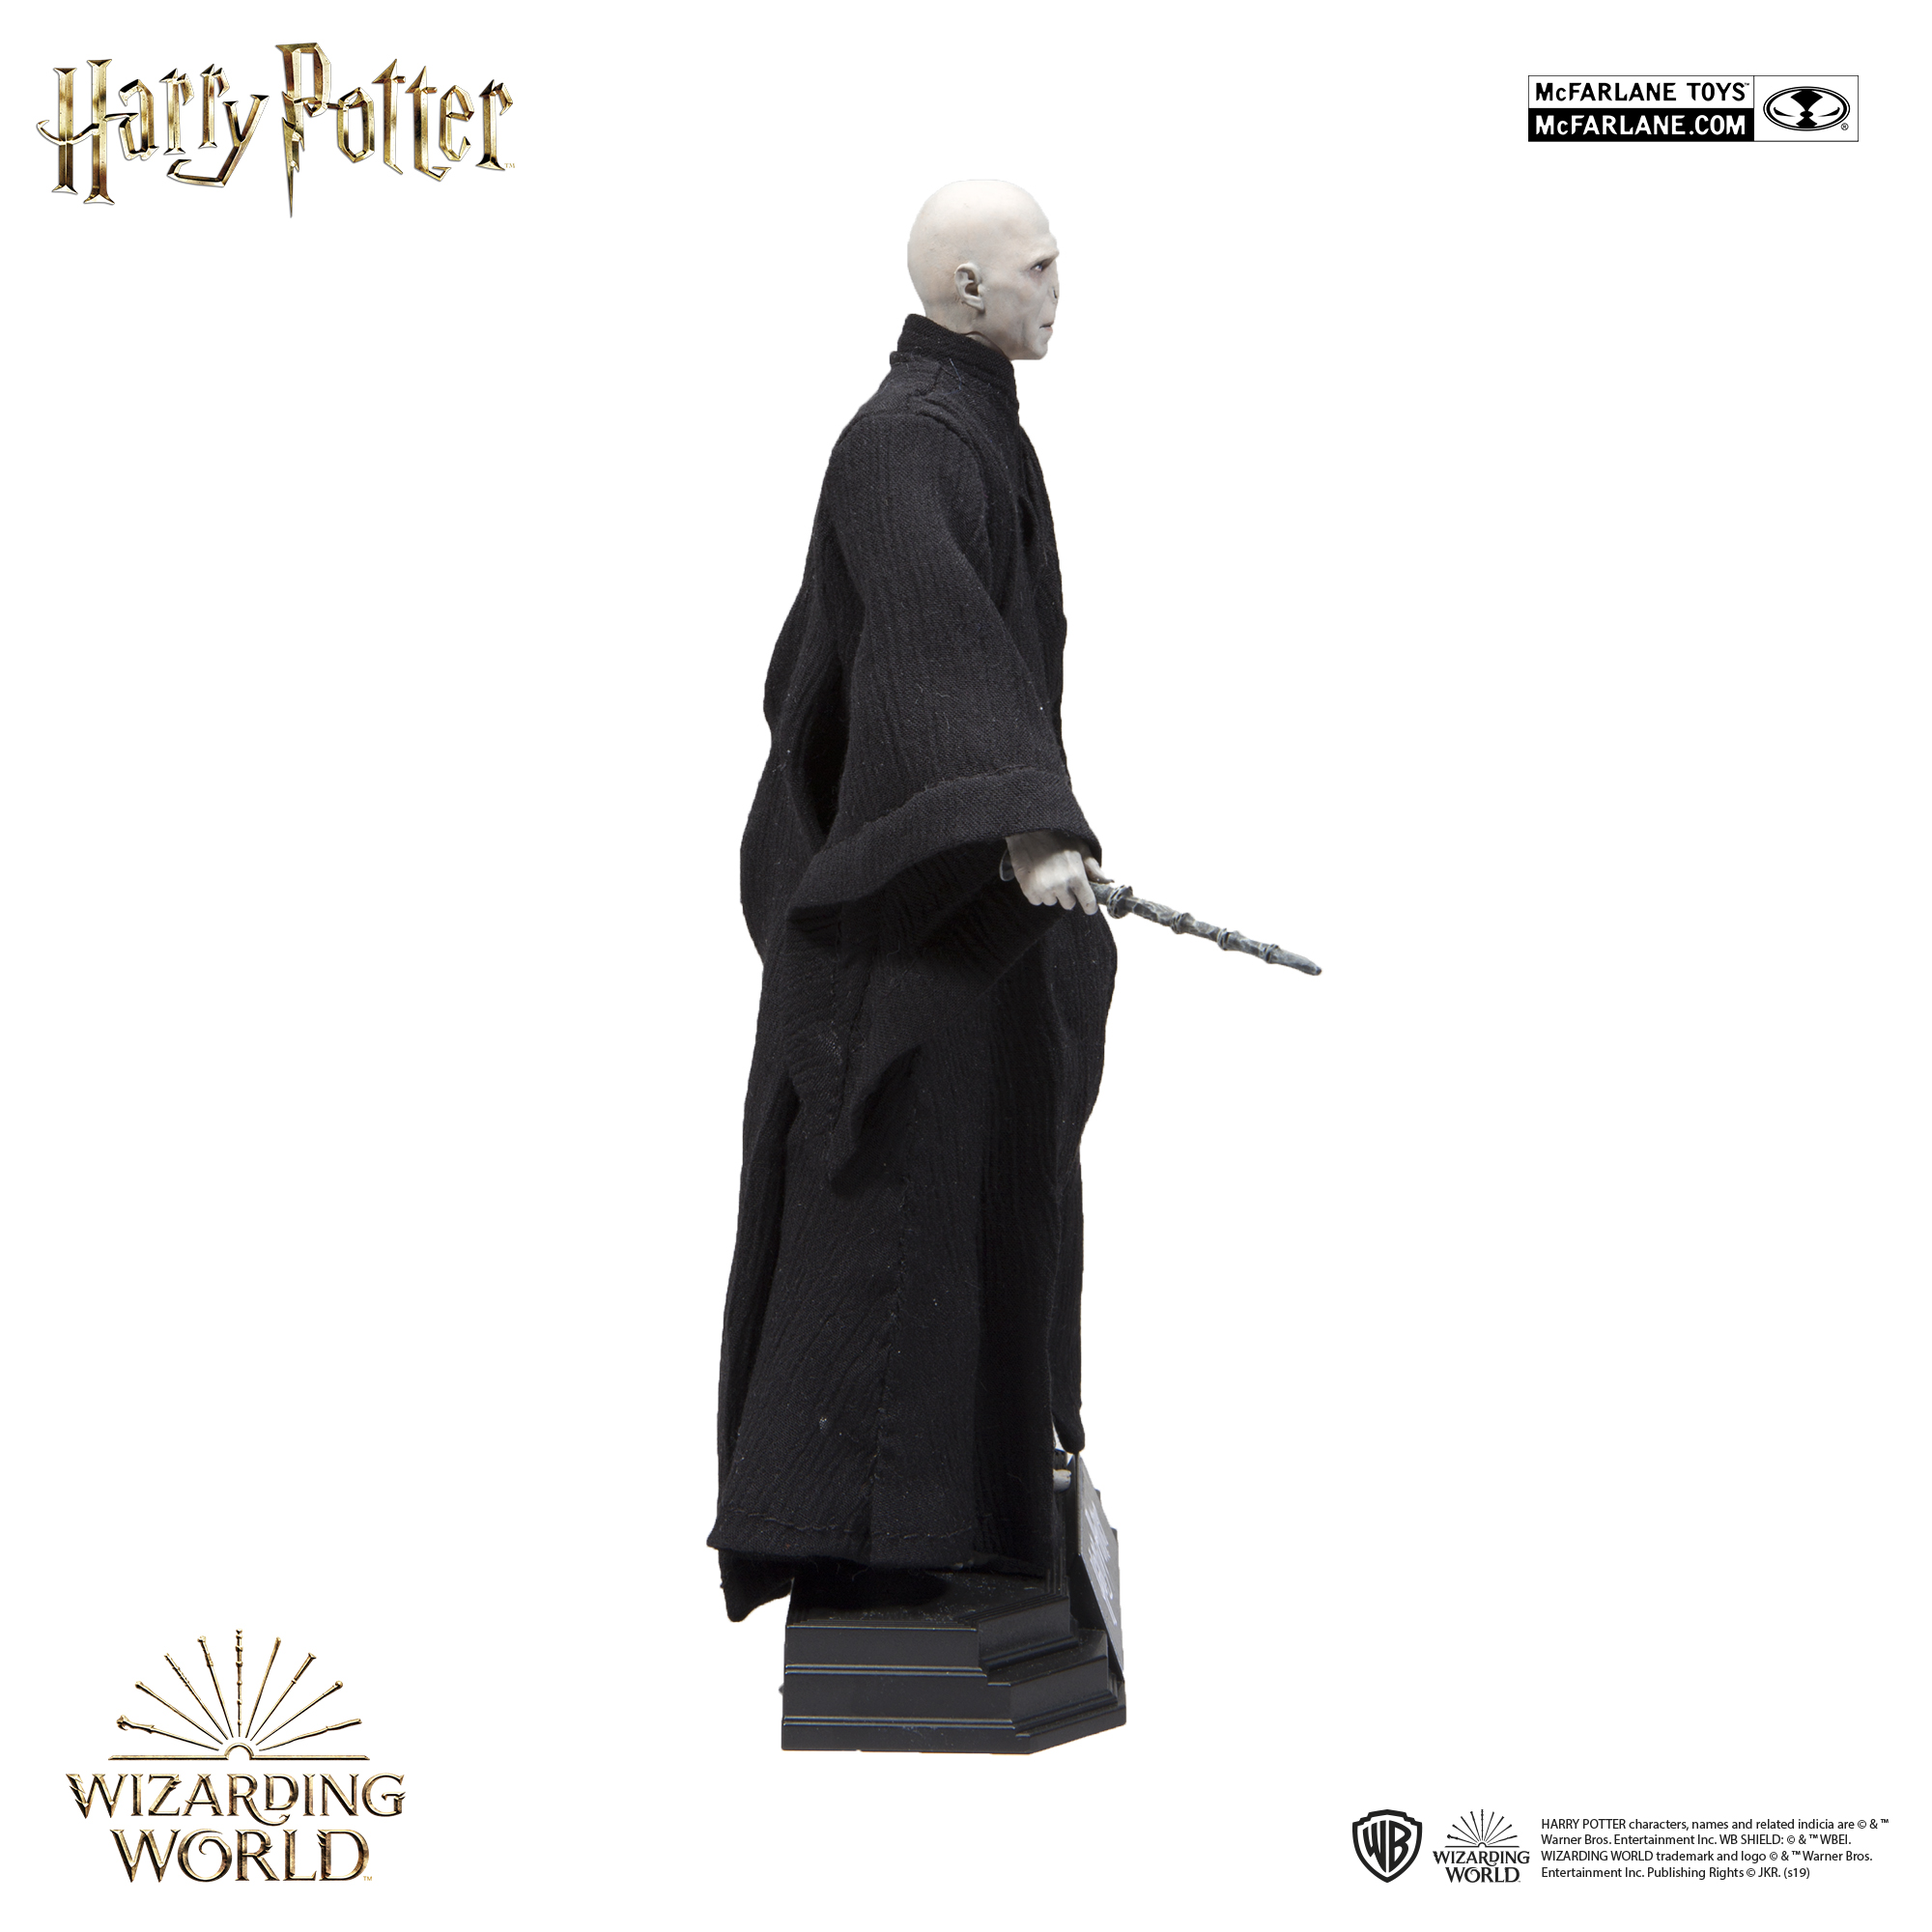  McFarlane Toys Harry Potter - Figura de acción de Lord  Voldemort : Todo lo demás